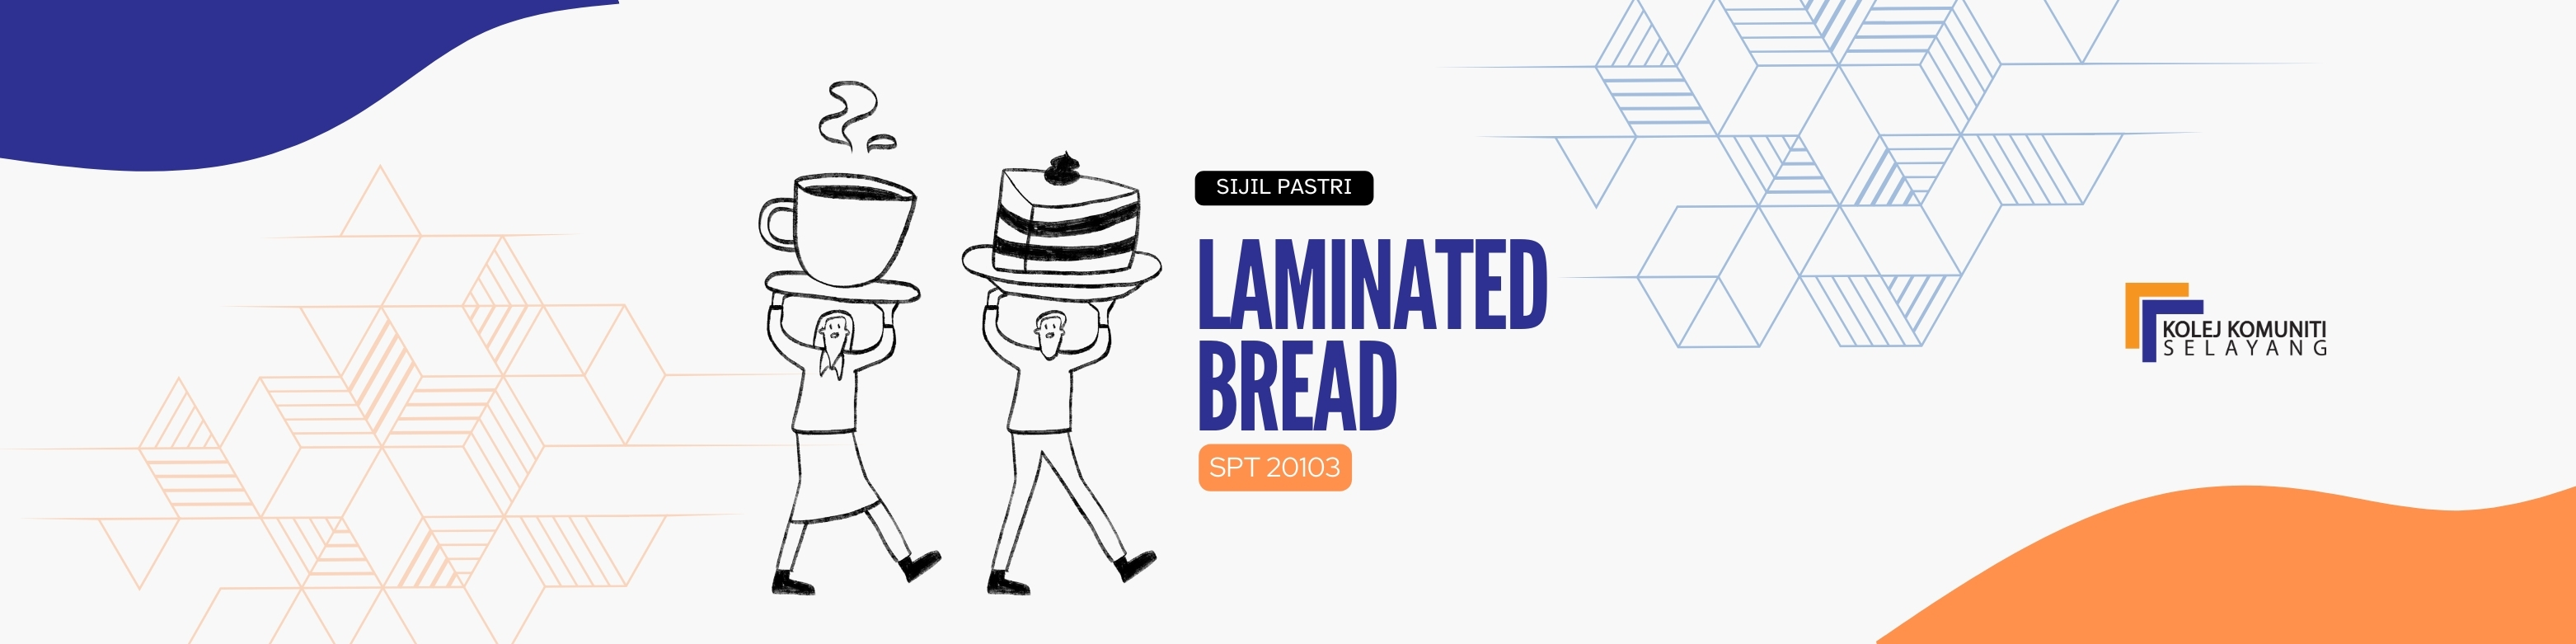 SPT20103 - LAMINATED BREAD